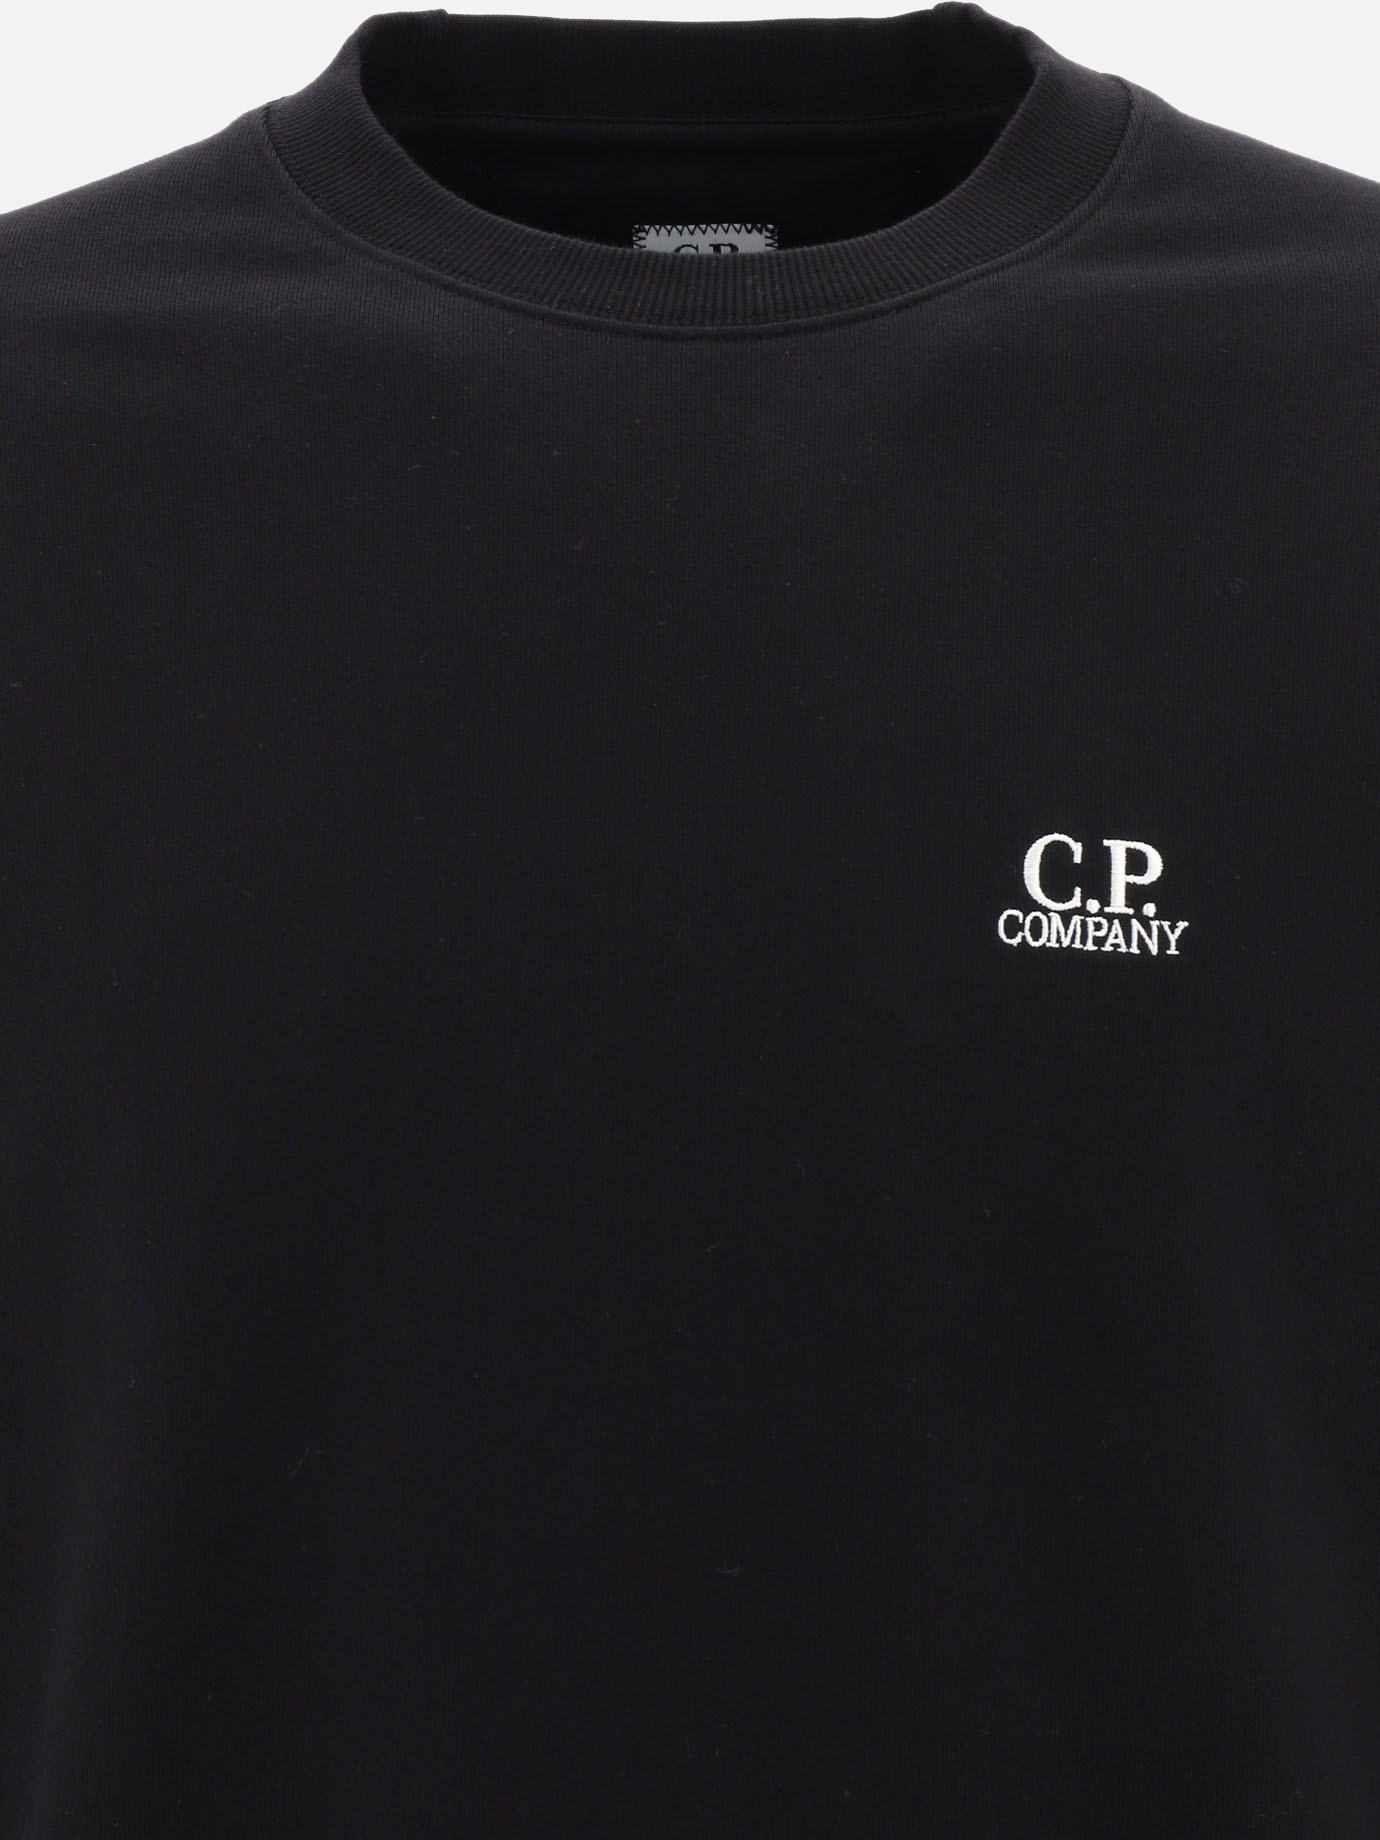  Diagonal Raised  sweatshirt by C.P. Company